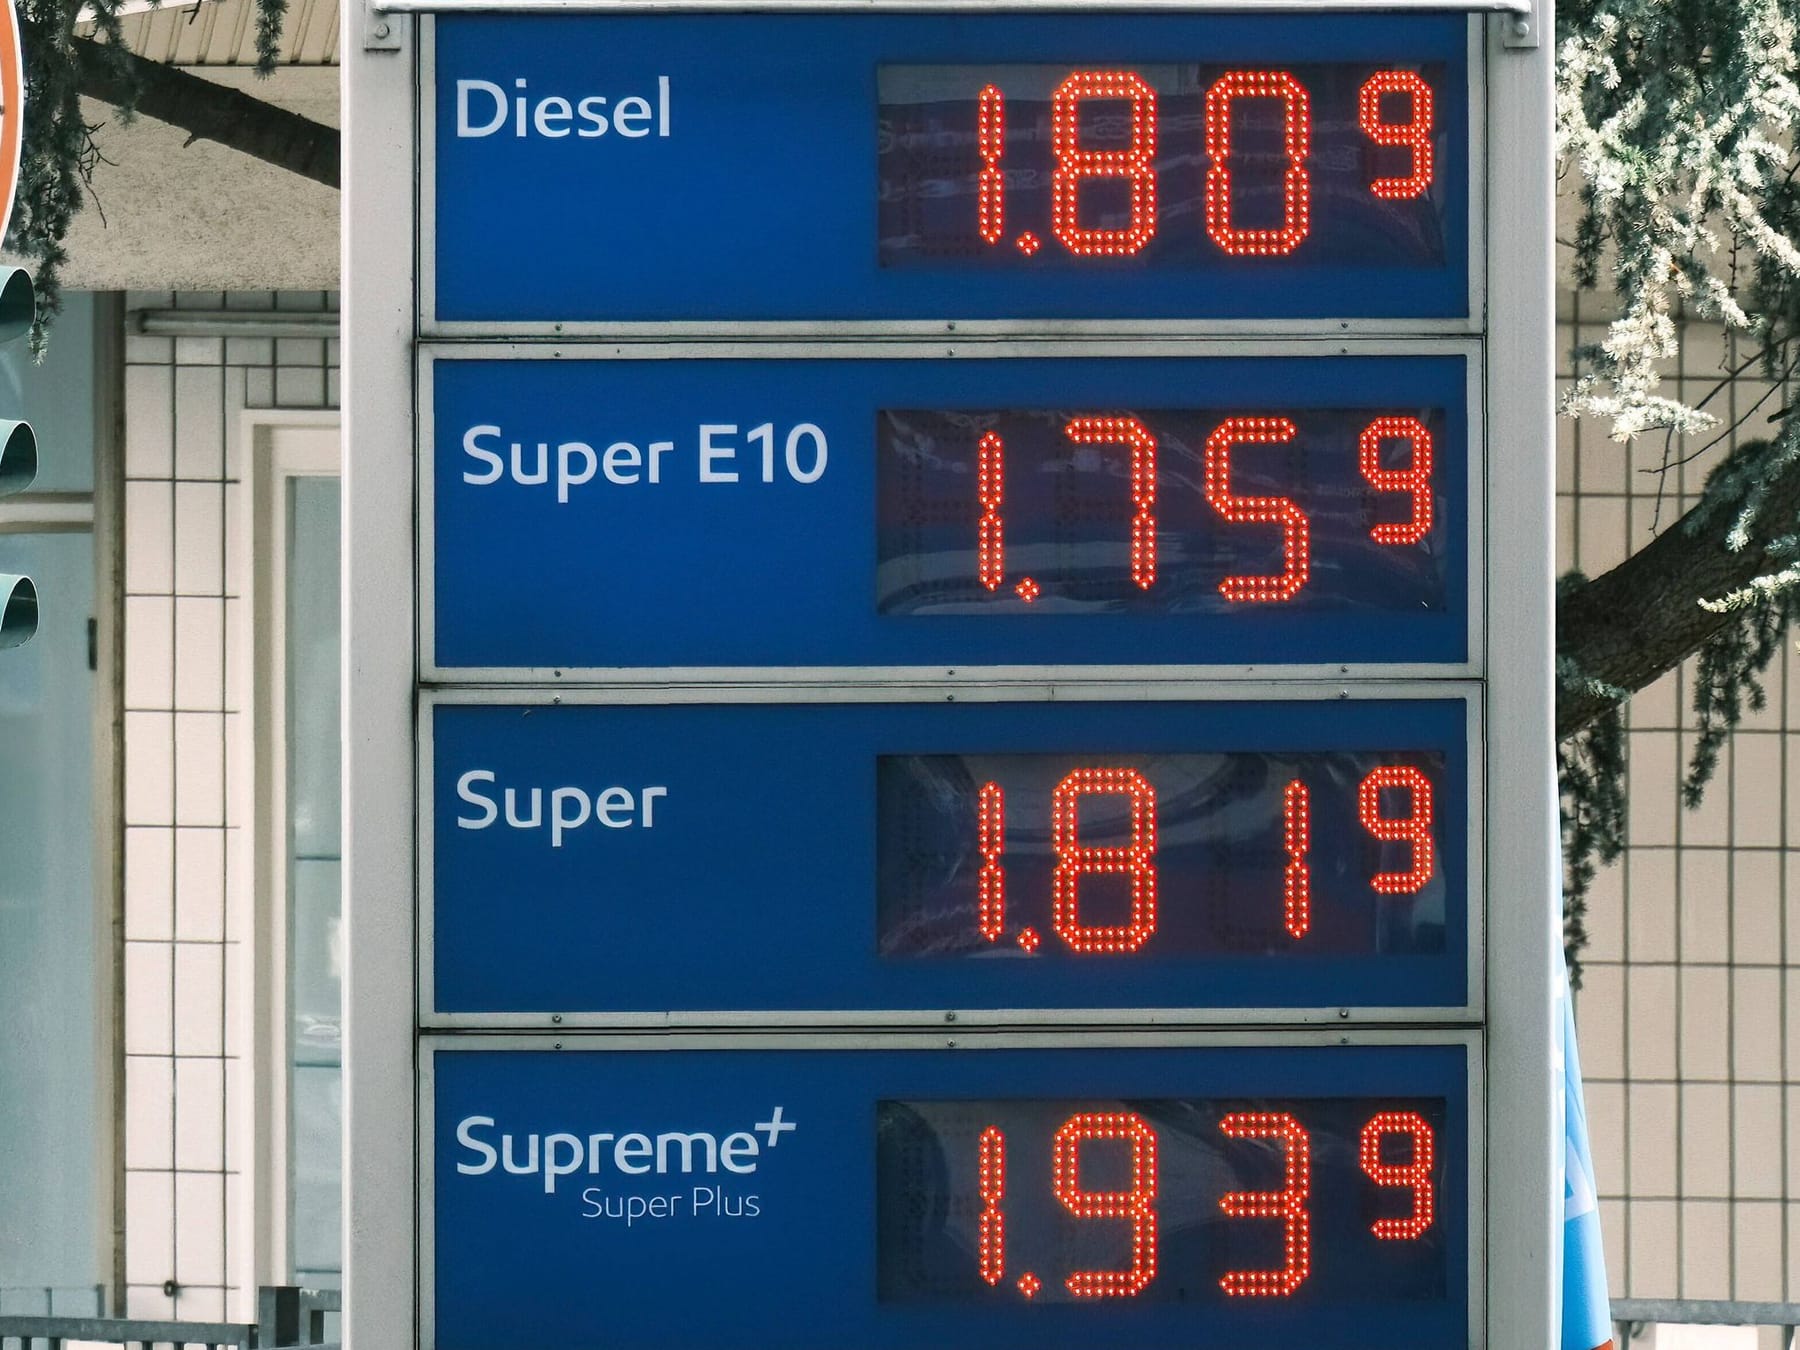 Diesel teurer als Benzin - Experten erklären, warum das so ist und